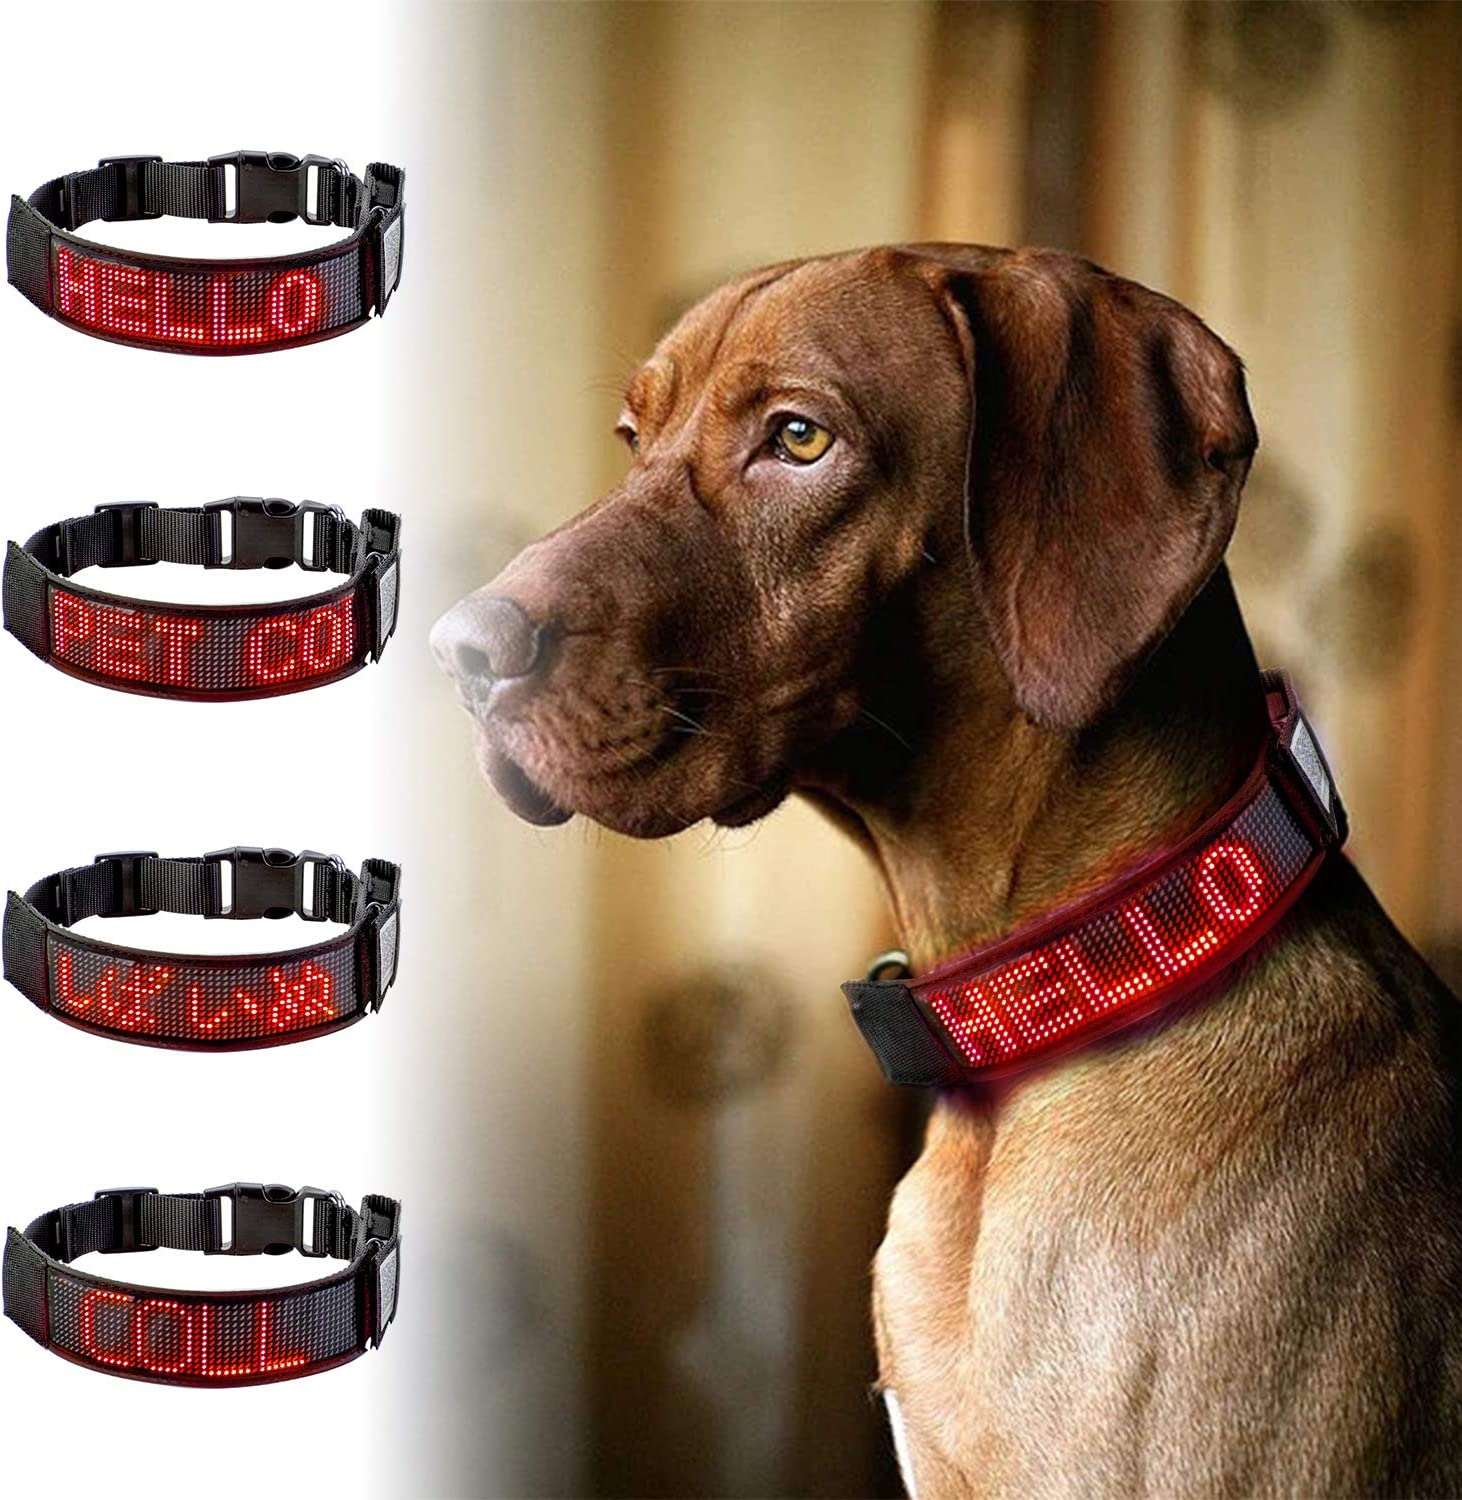 Bluetooth Flashing Pet Dog LED Collars